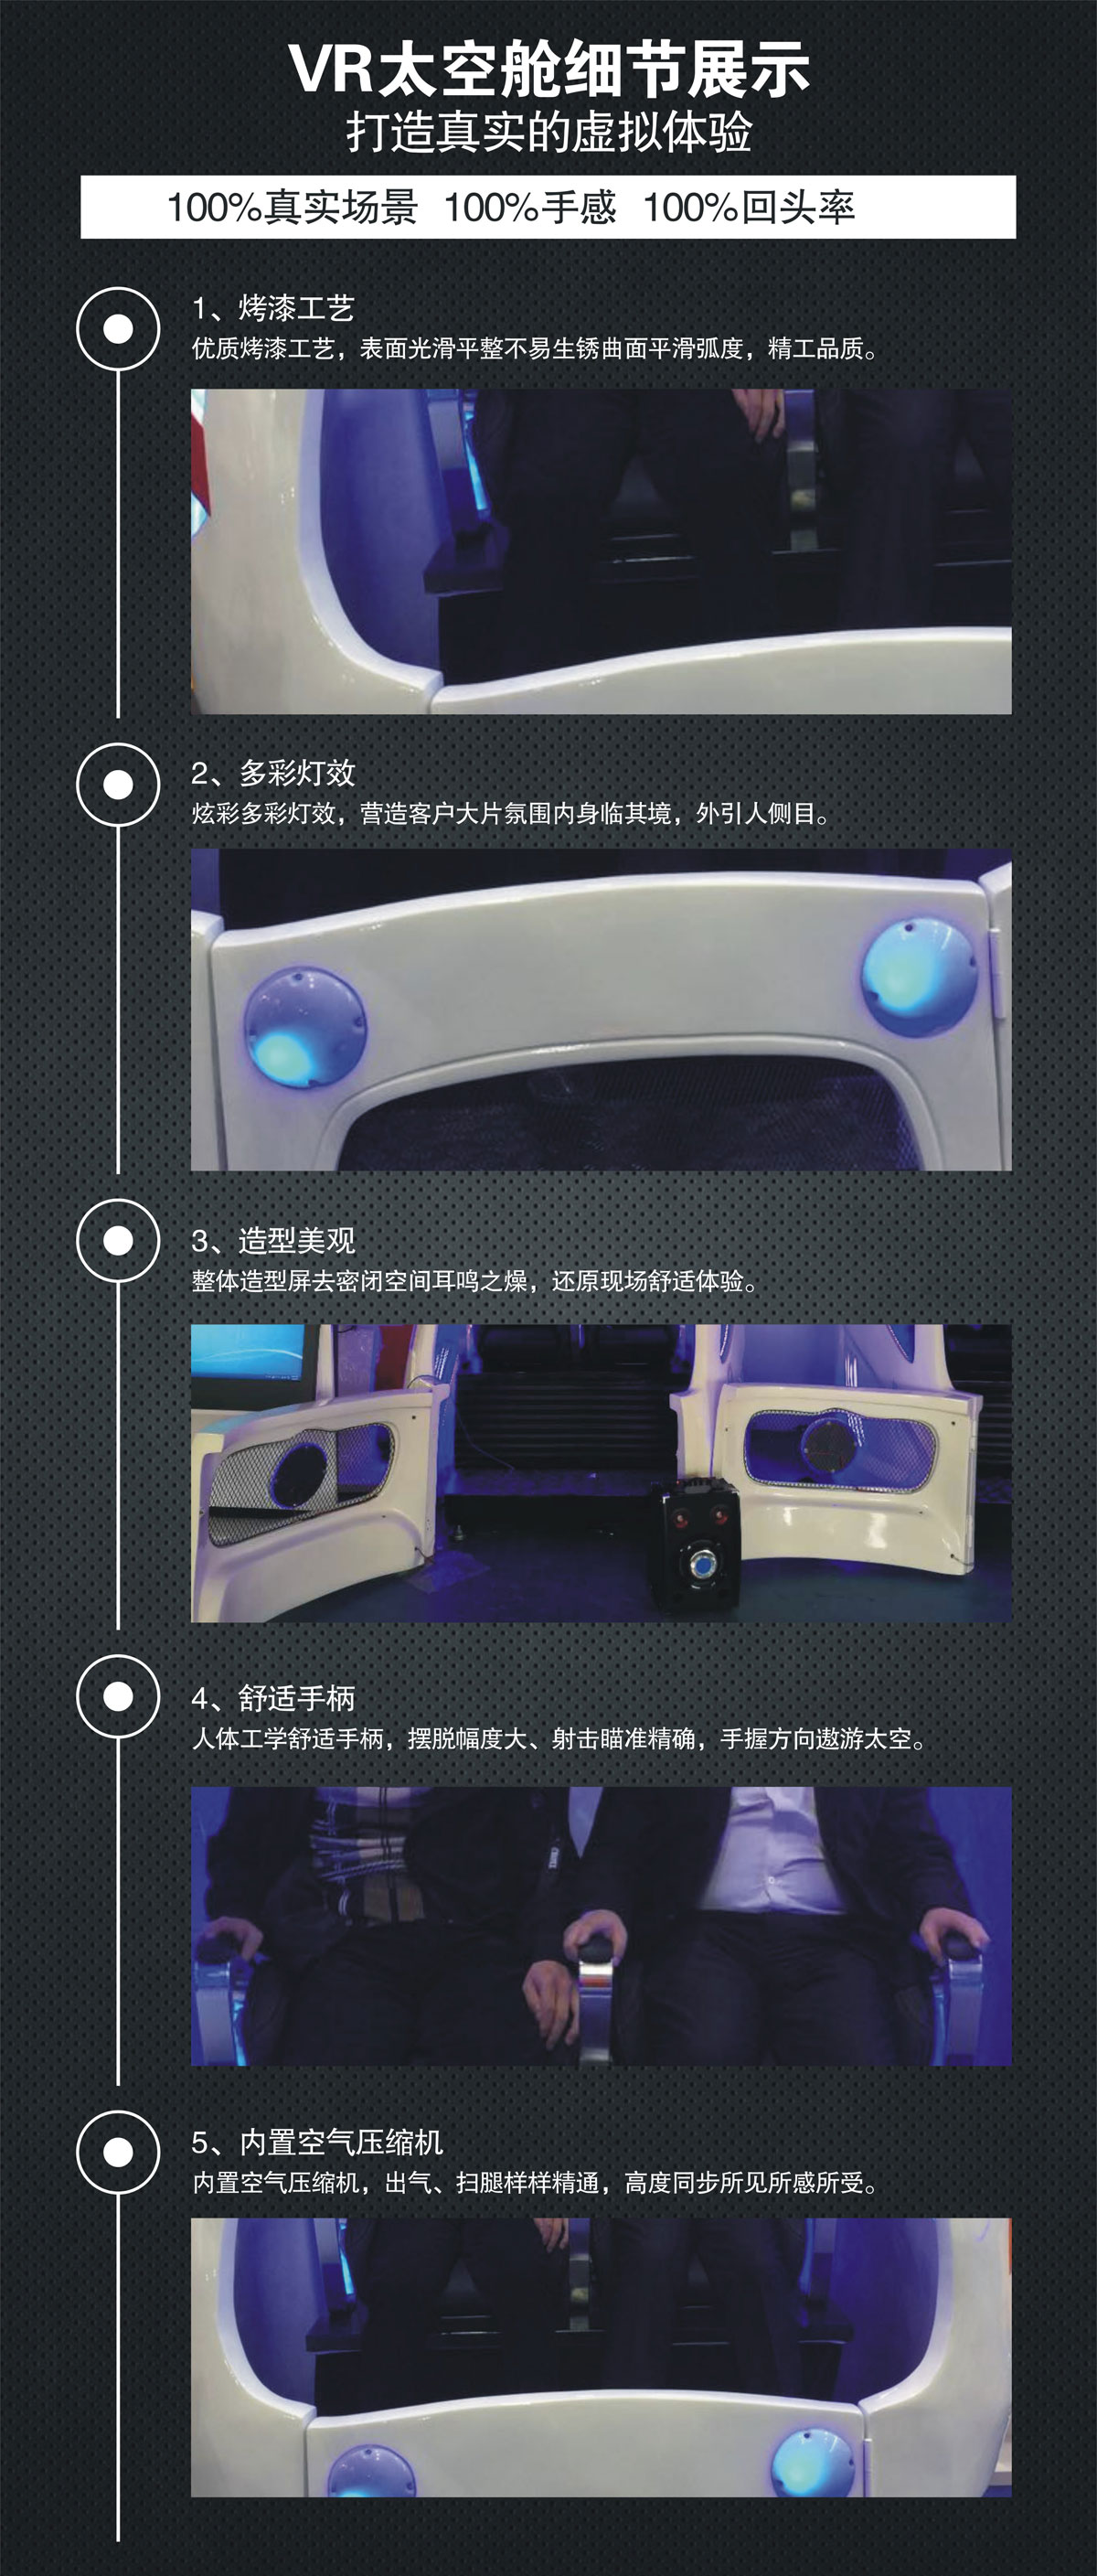 校园安全VR太空舱细节展示.jpg